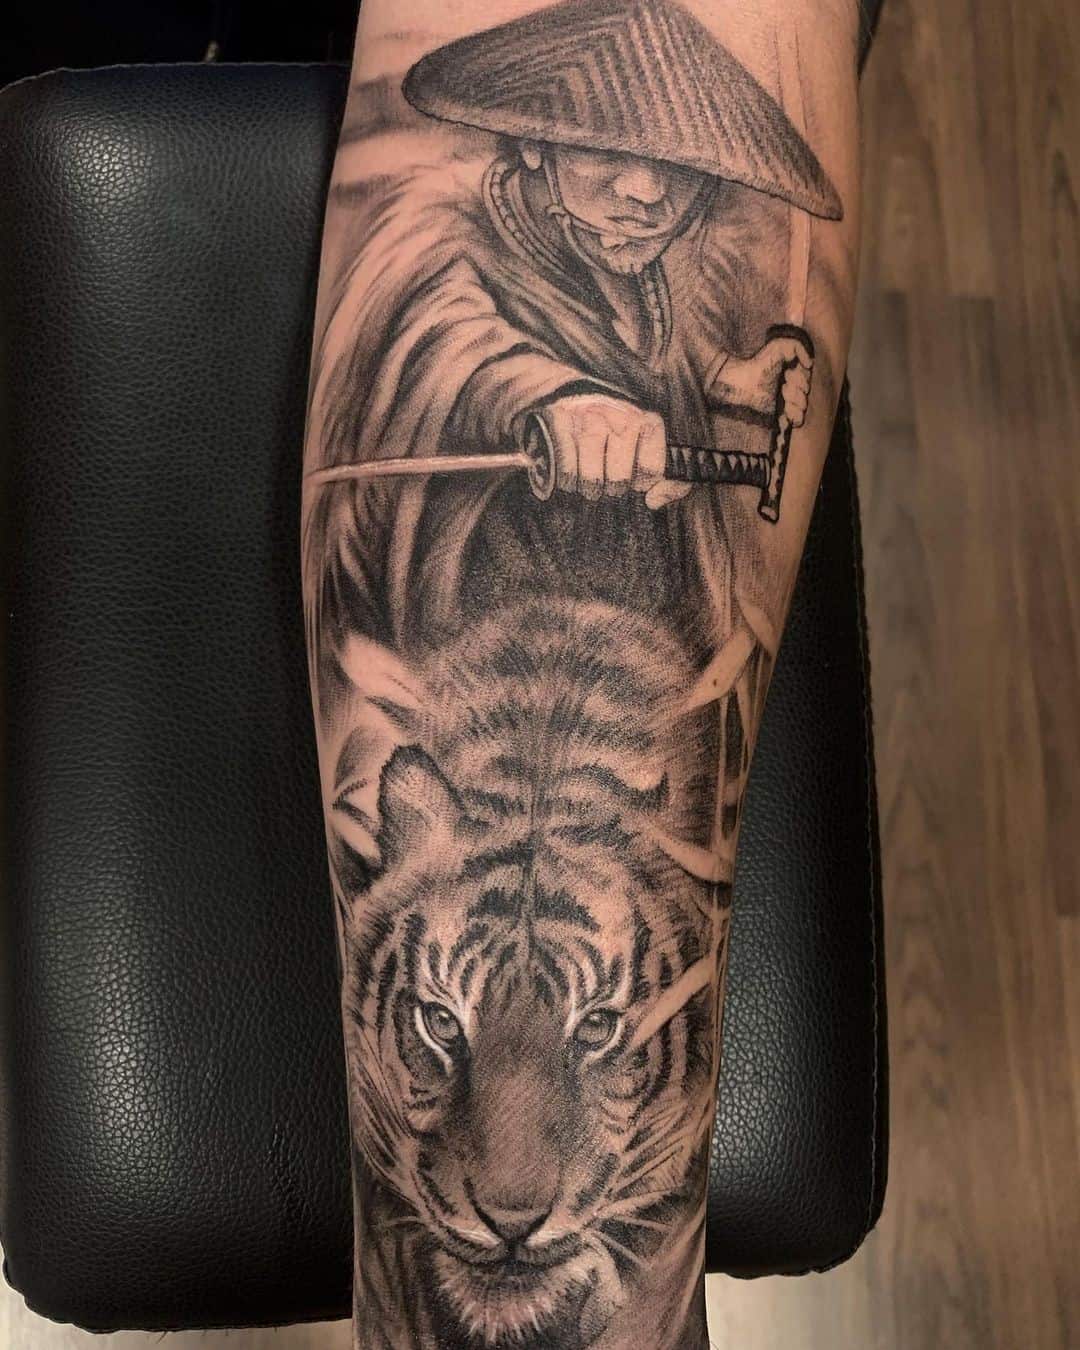 Tatuaje de samurai con estampado de tigre 